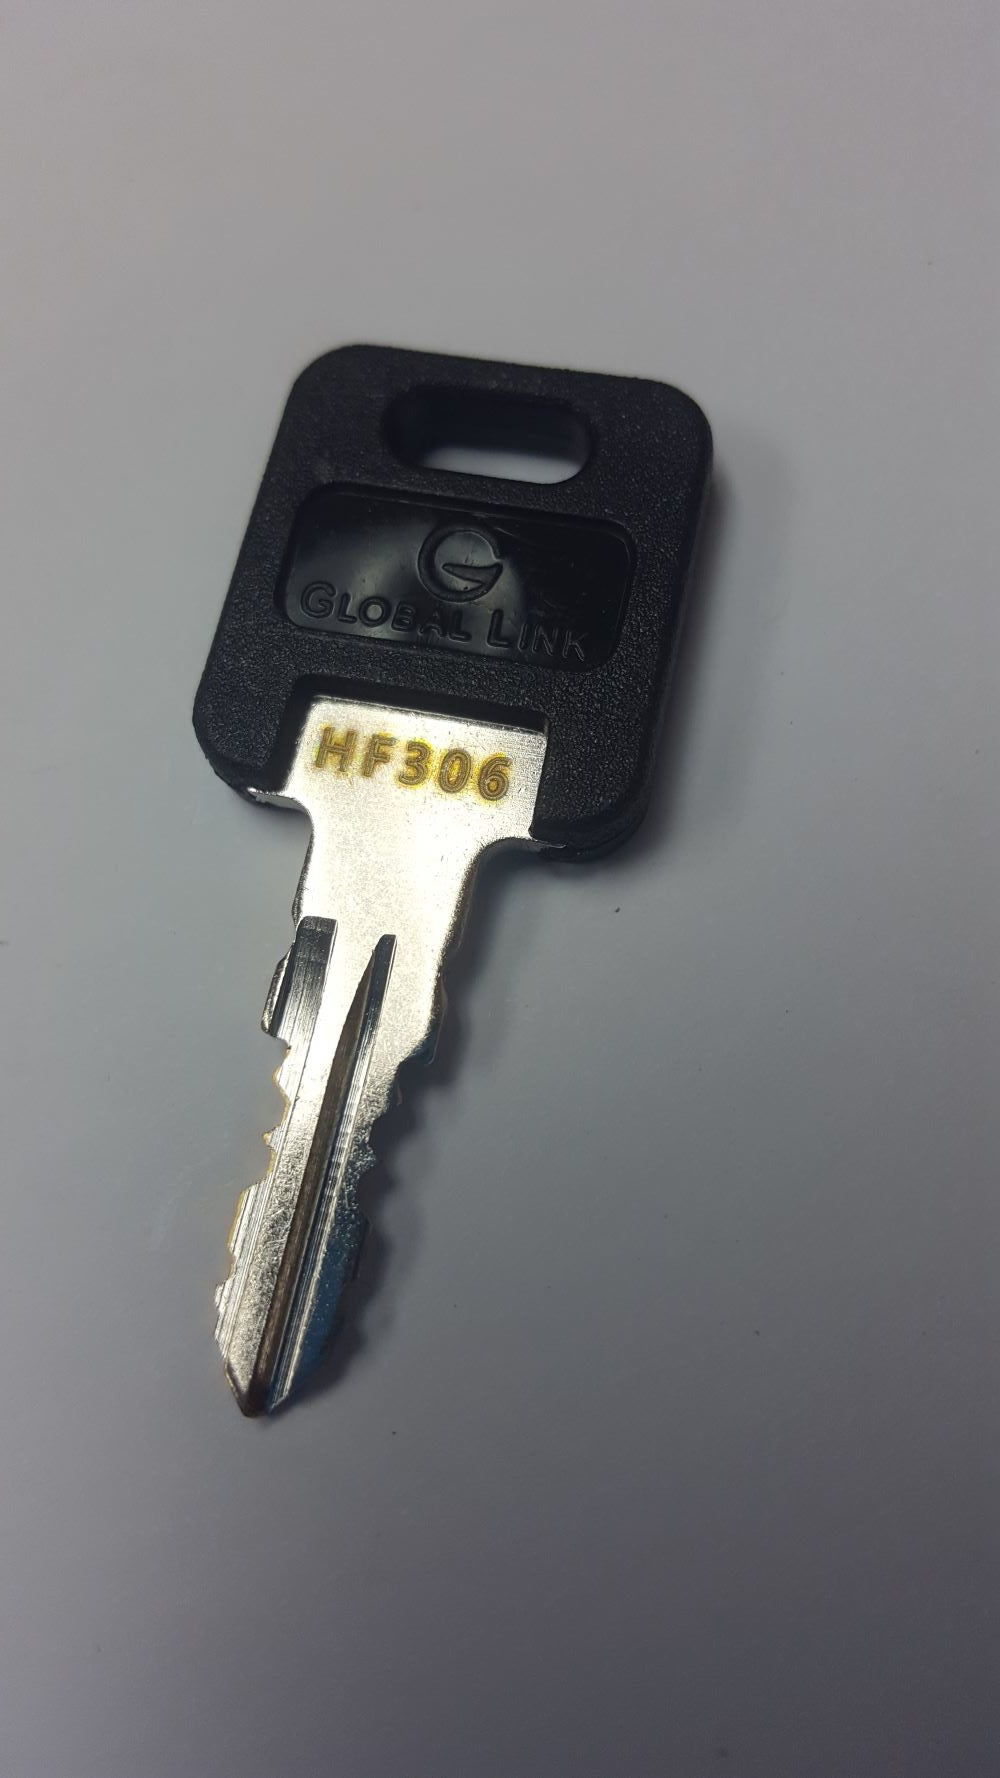 CPG KEY-HF-306 Pre-cut Stamped FIC Replacemnt HF306 Key